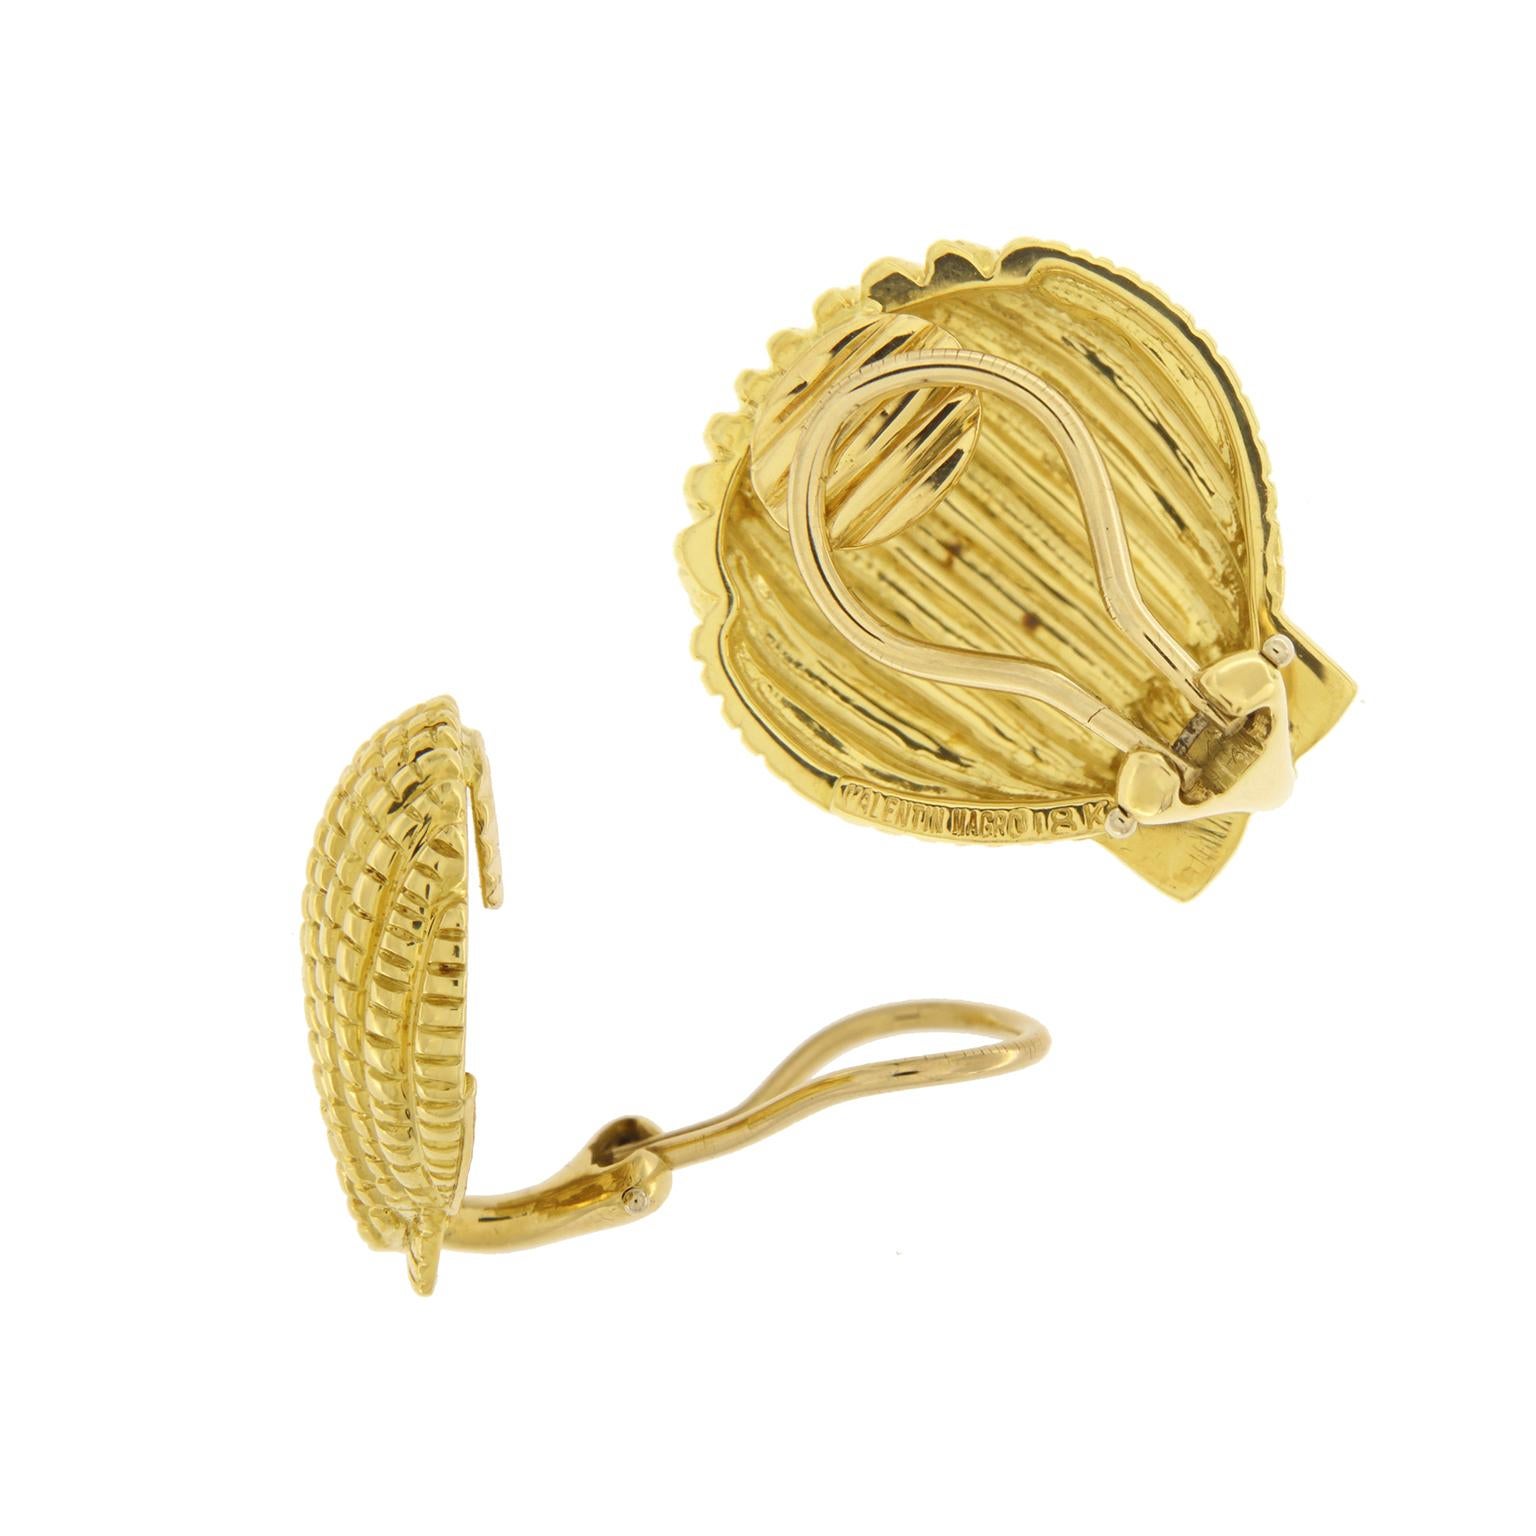 L'or représente un thème marin pour ces boucles d'oreilles. Une coquille Saint-Jacques est formée avec une base d'or jaune 18k poli avec des crêtes douces pour créer des rangées verticales pour la définition. Les indentations à travers les rangs,